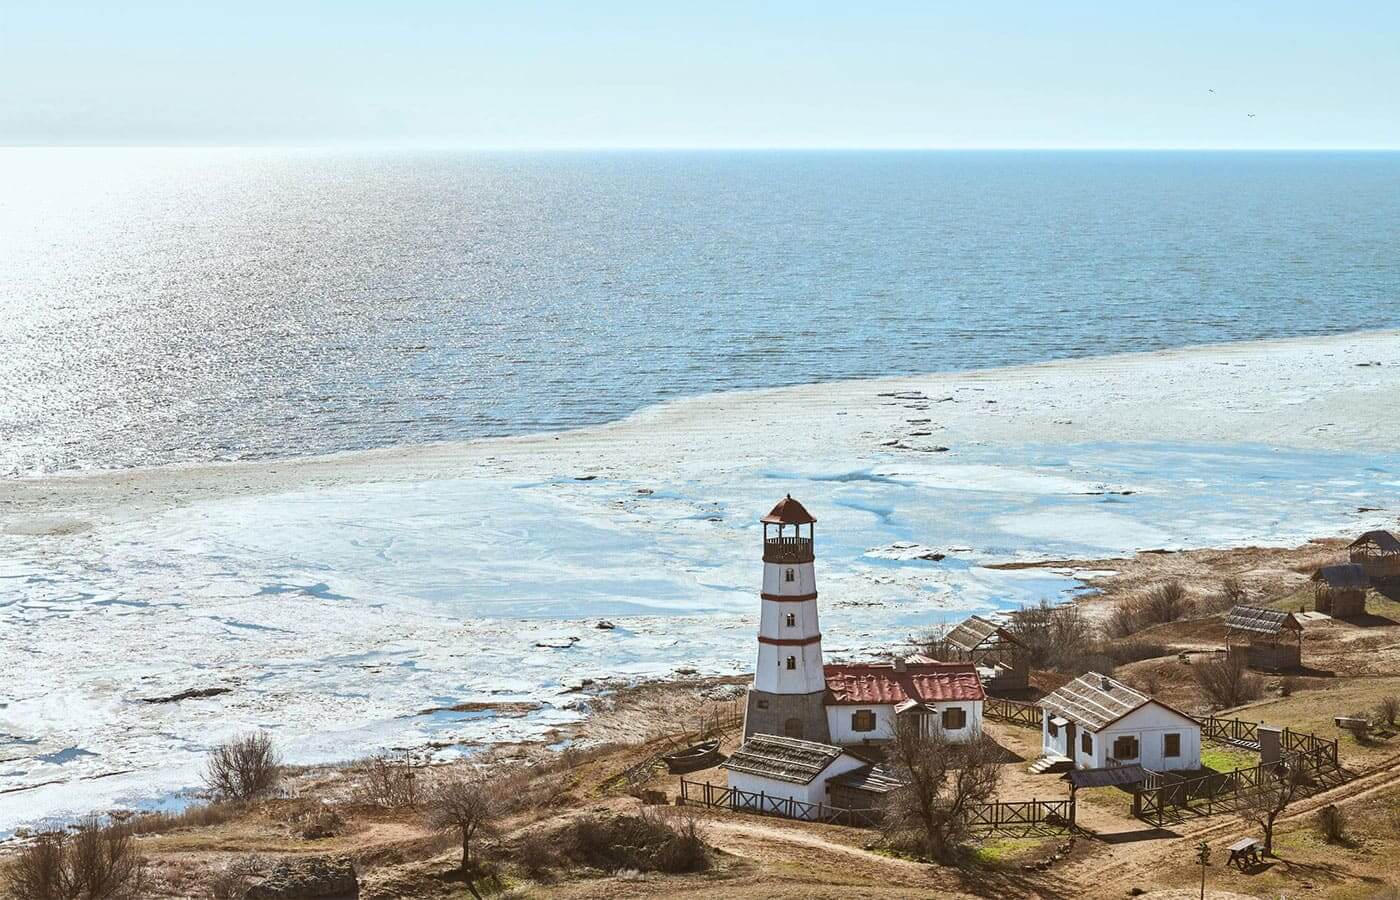 A lighthouse on the coast next to a beach